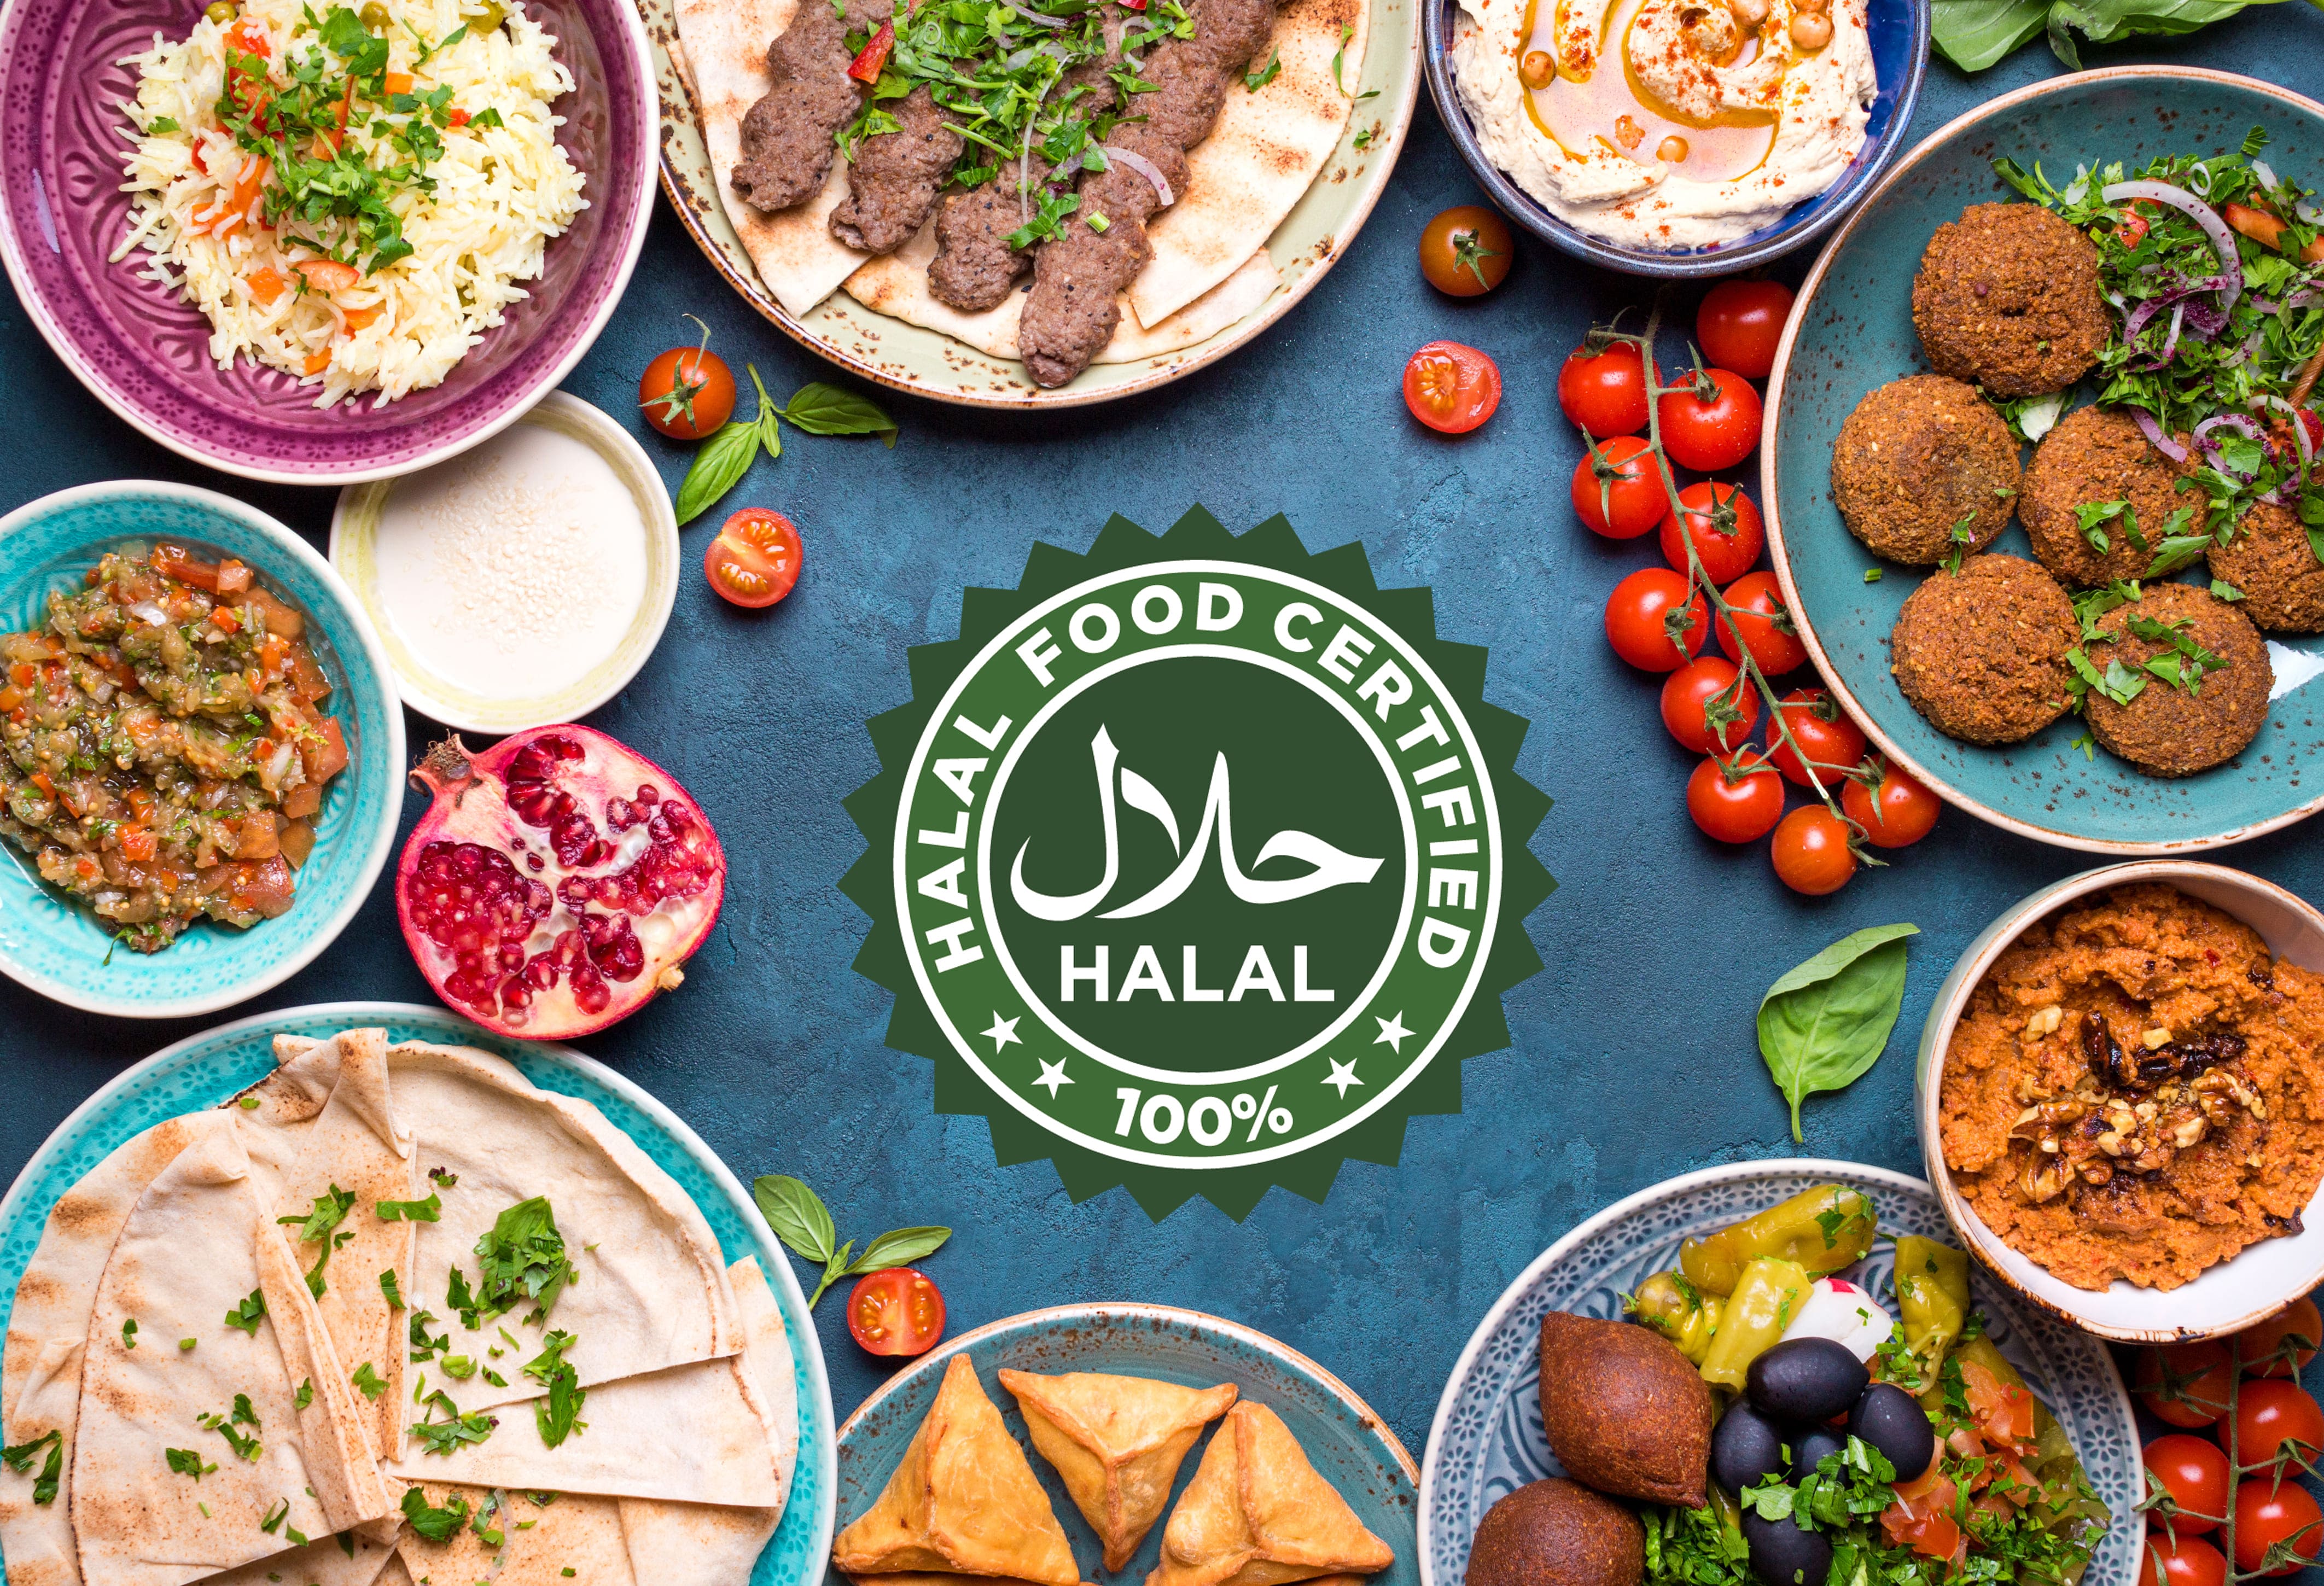 Halal food